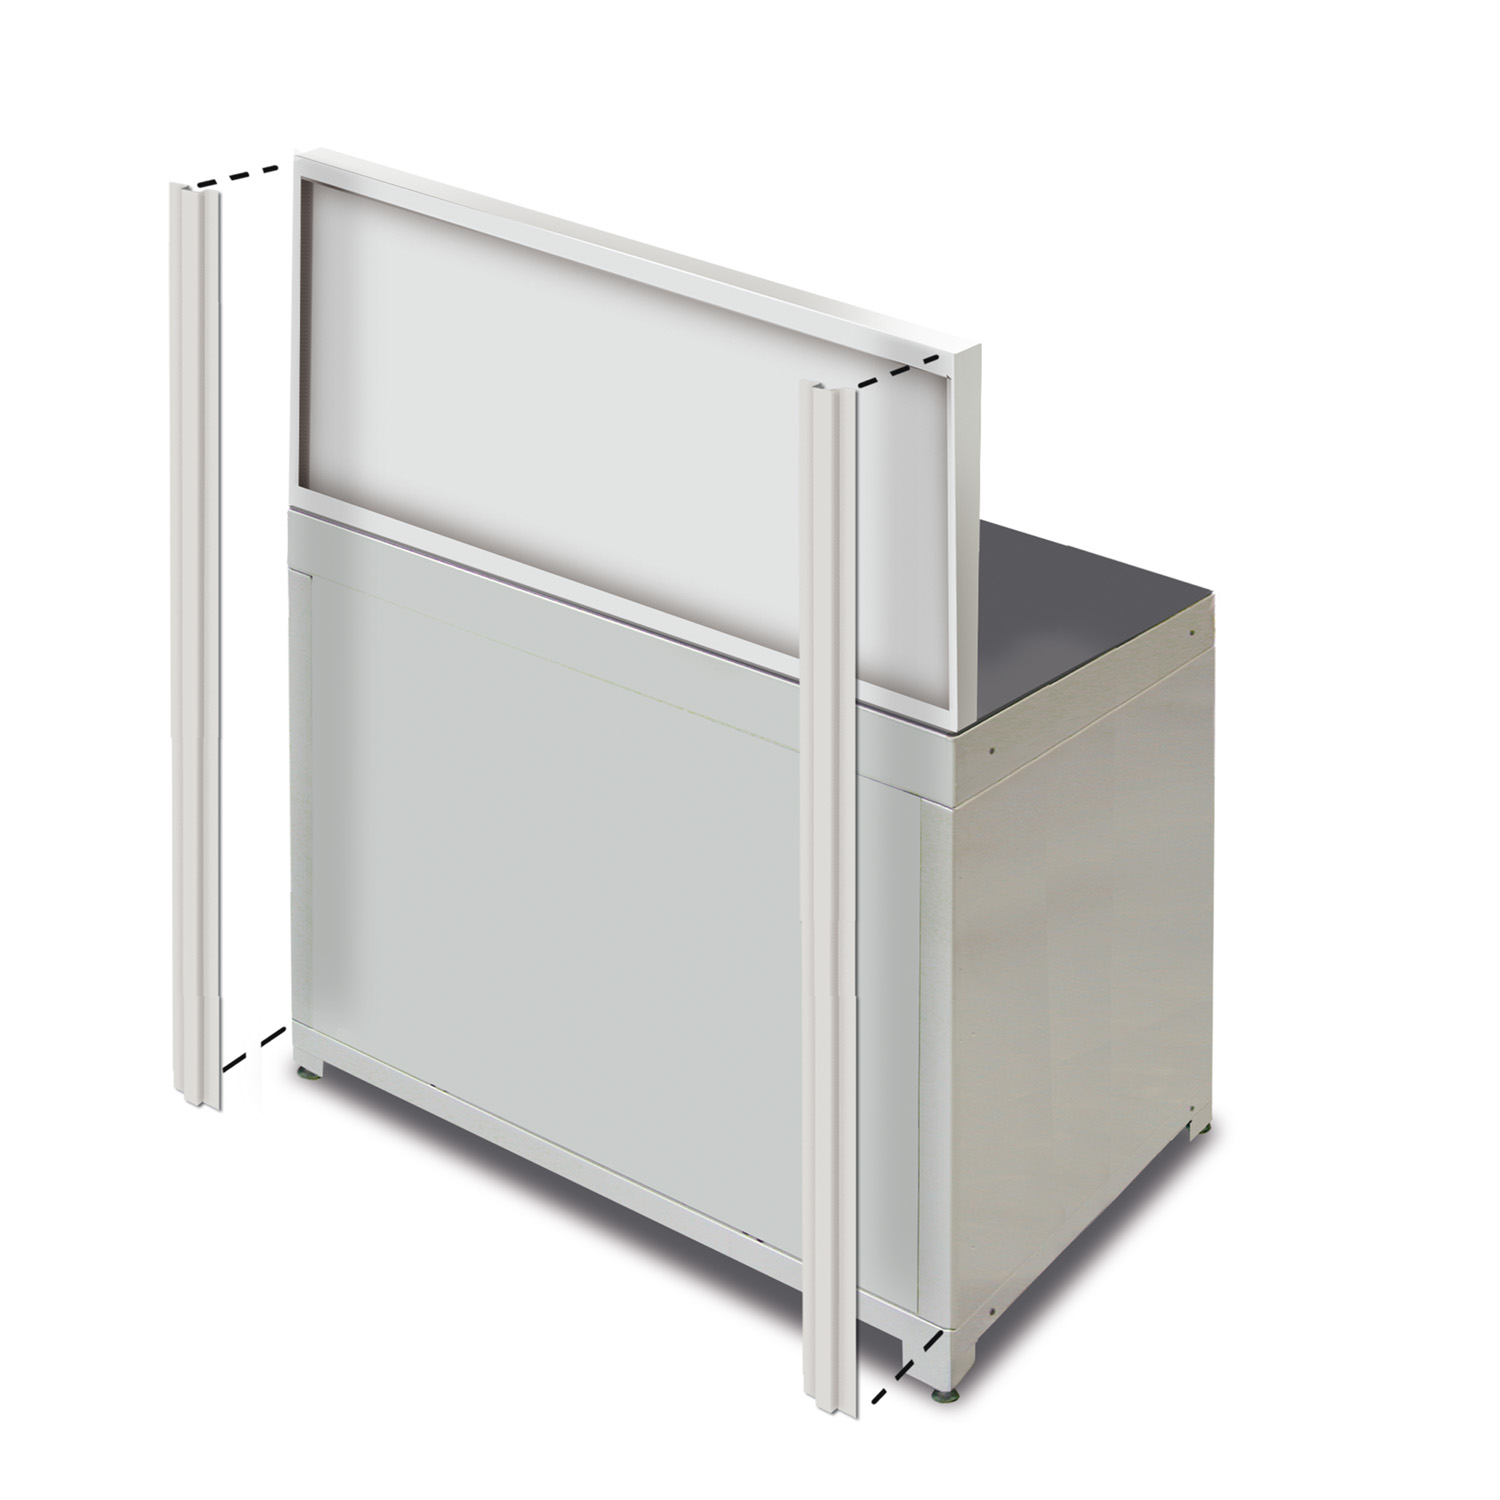 Soportes verticales x2 (440mm panel/armario BX)